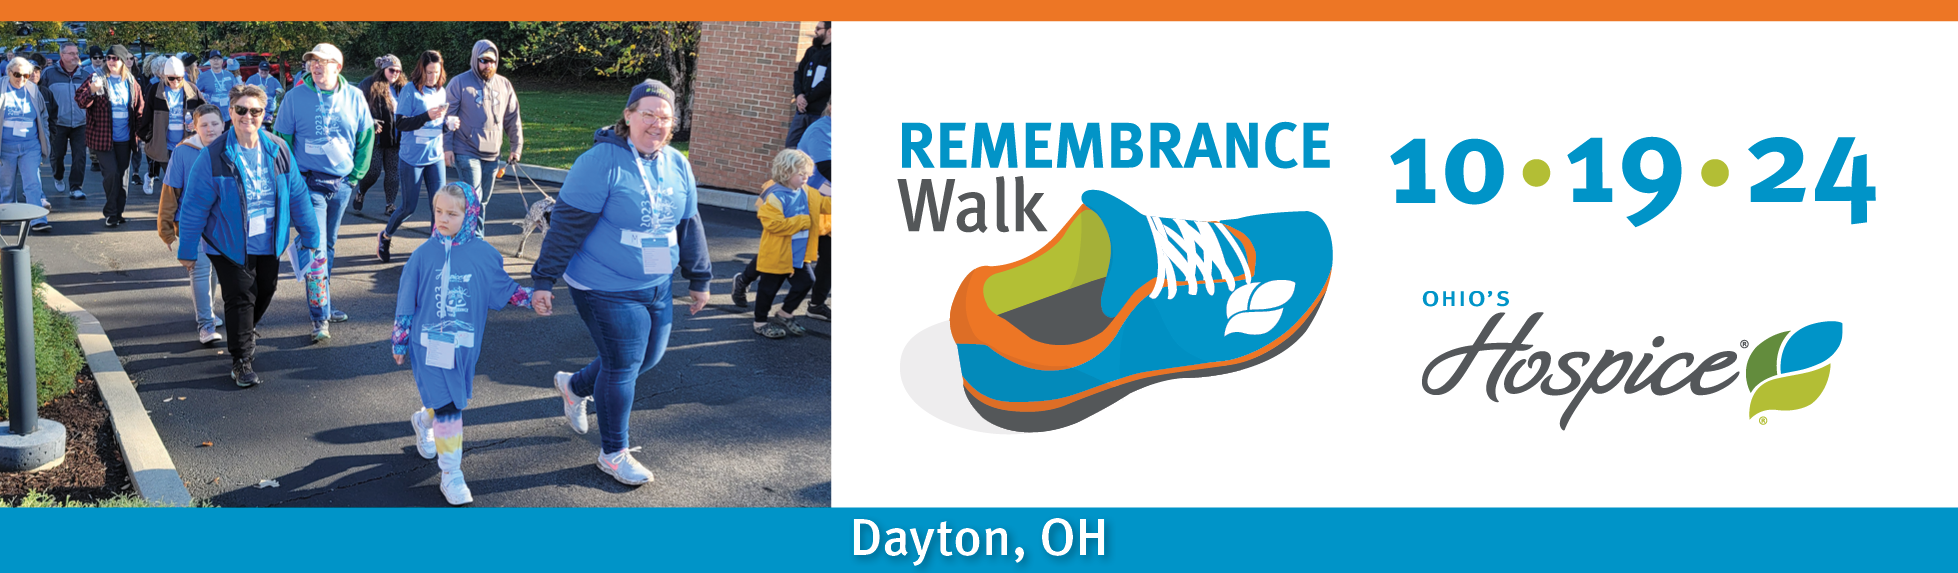 Ohio's Hospice of Dayton Remembrance Walk 10.19.24 Dayton, OH